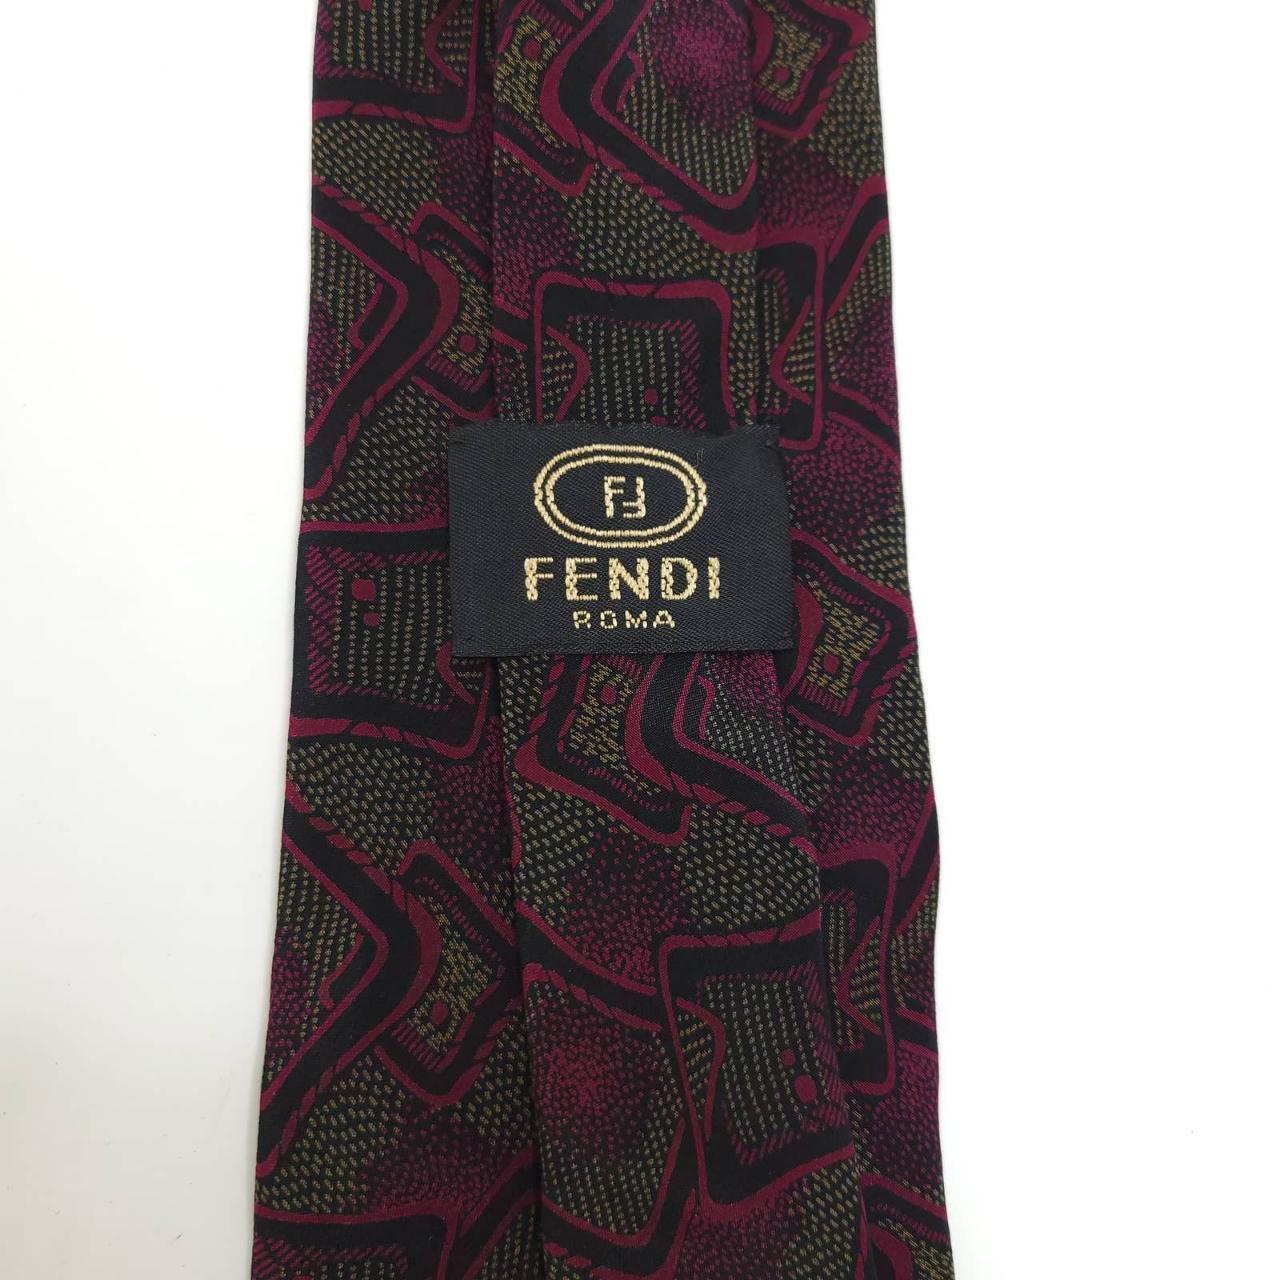 Fendi Men's Black and Purple Accessory